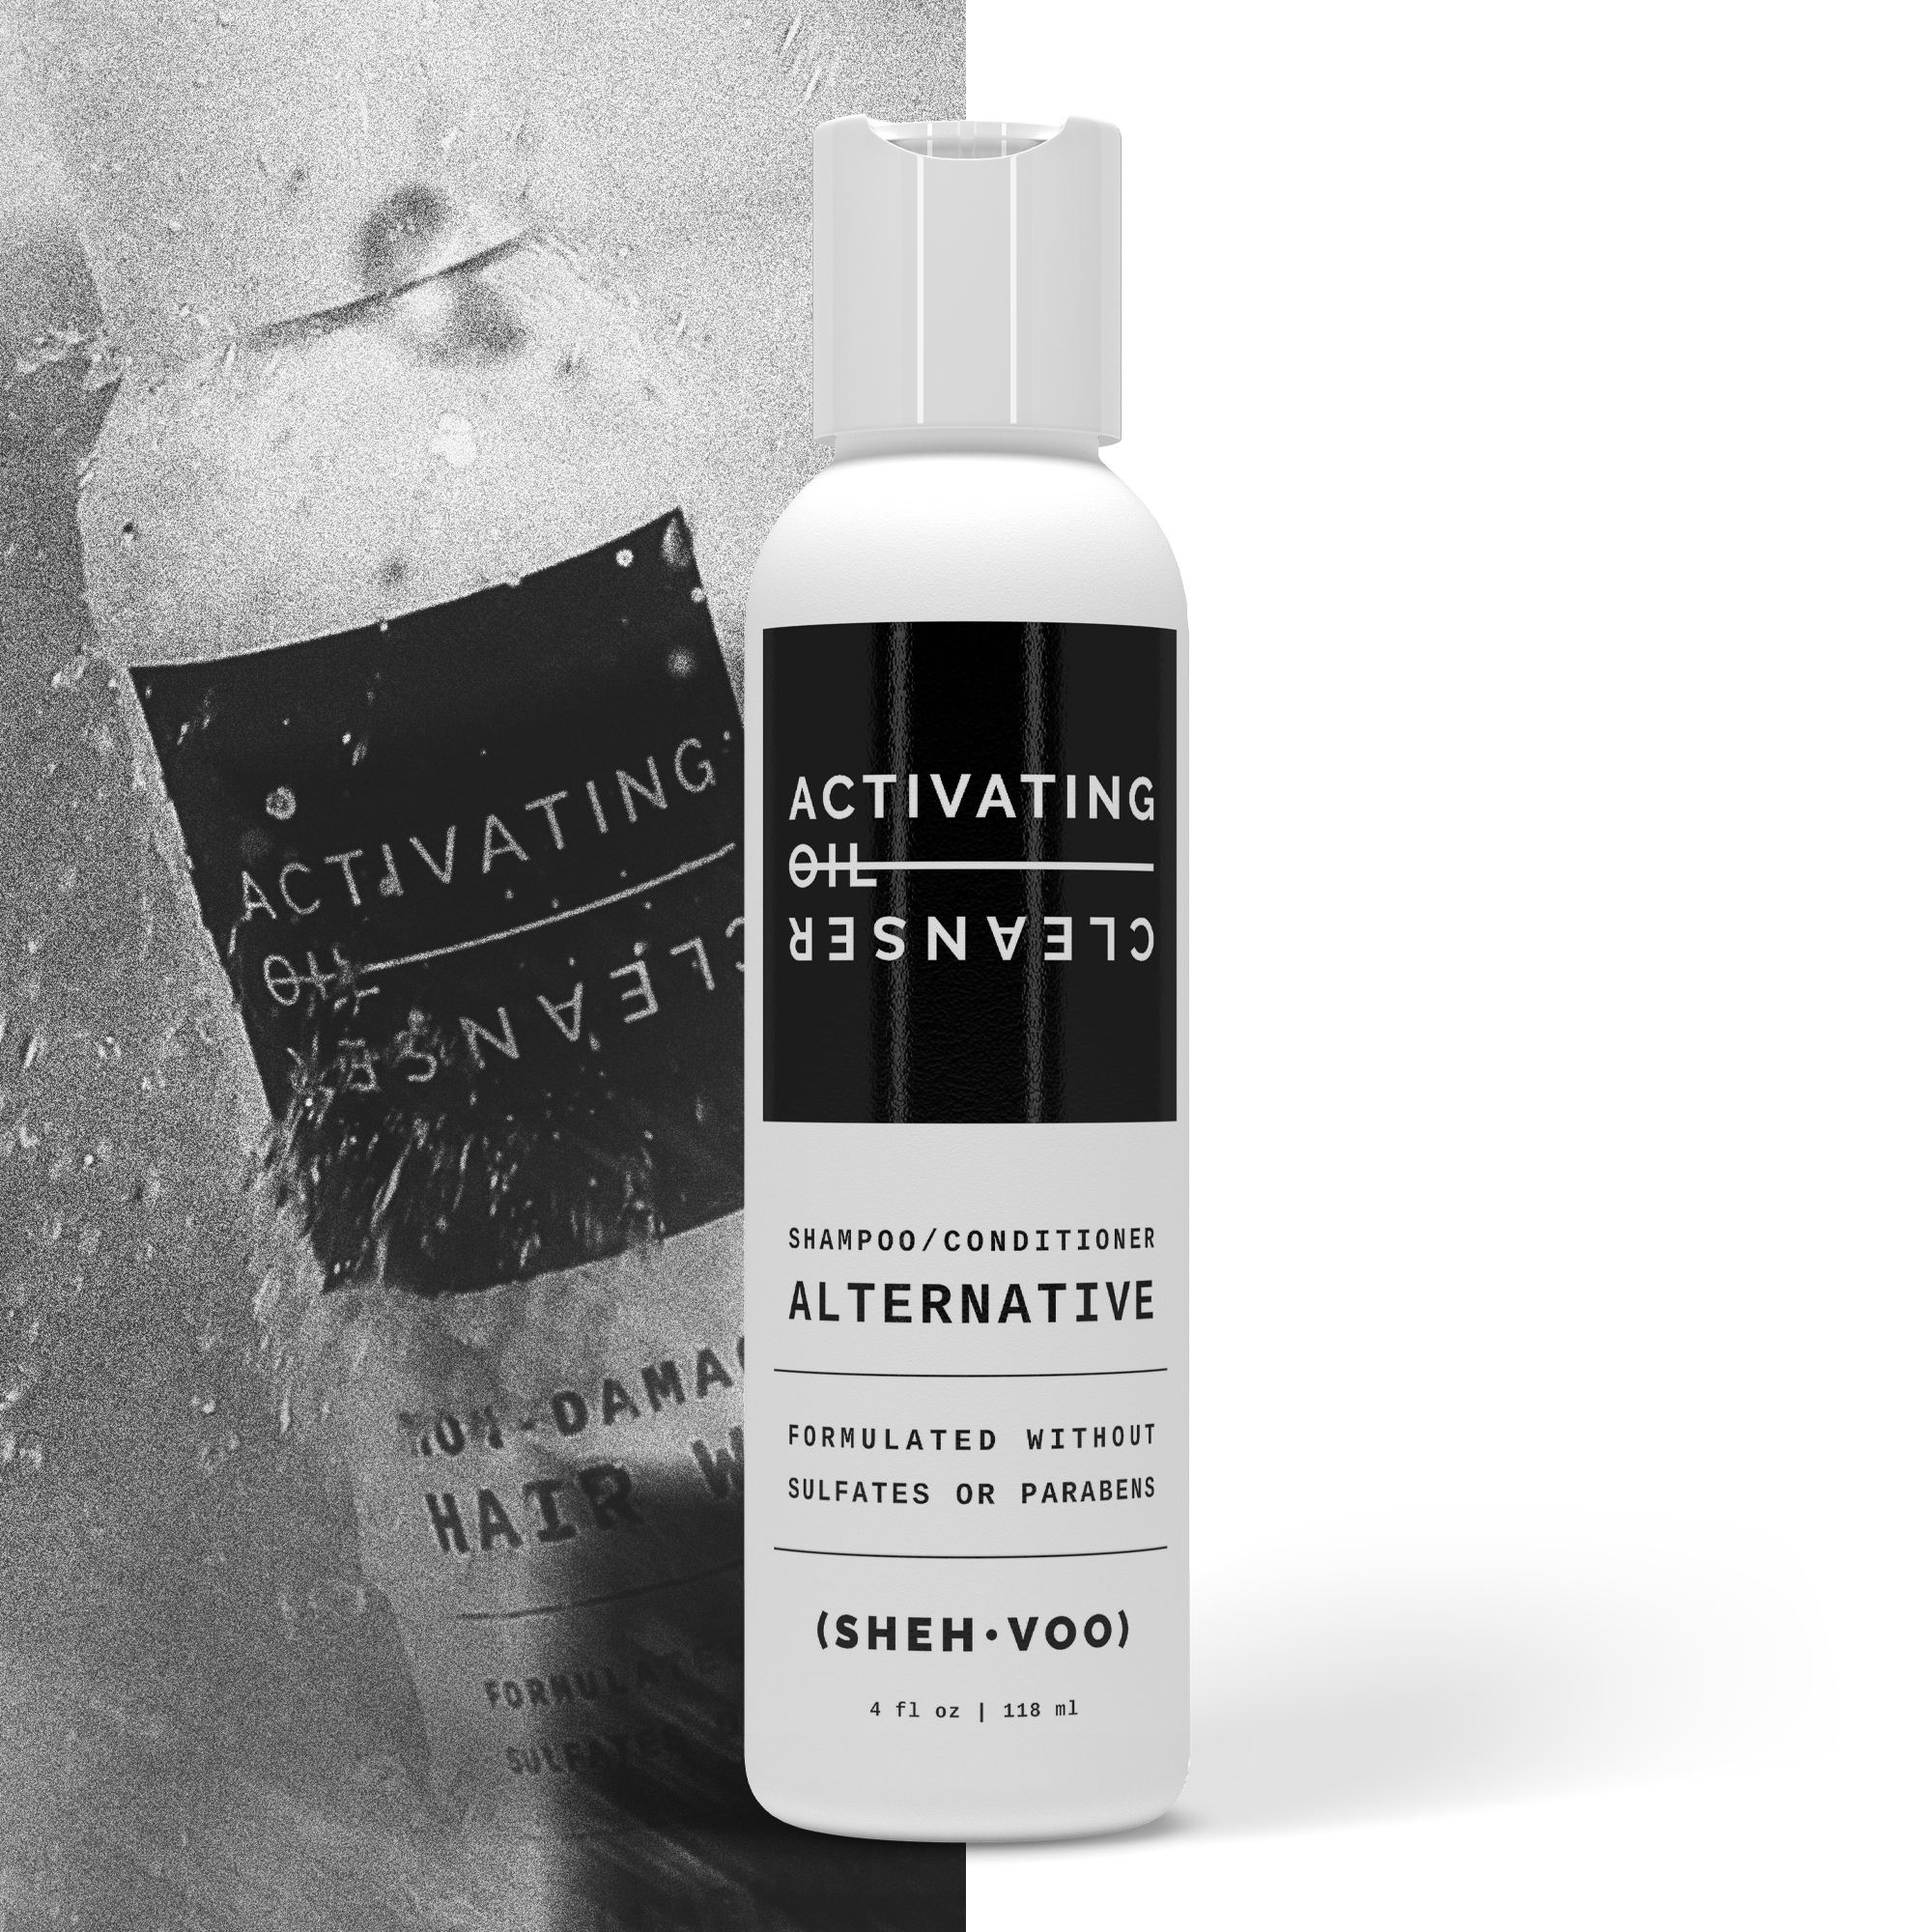 Privé Finishing Texture Spray for Hair – Texturizing Spray